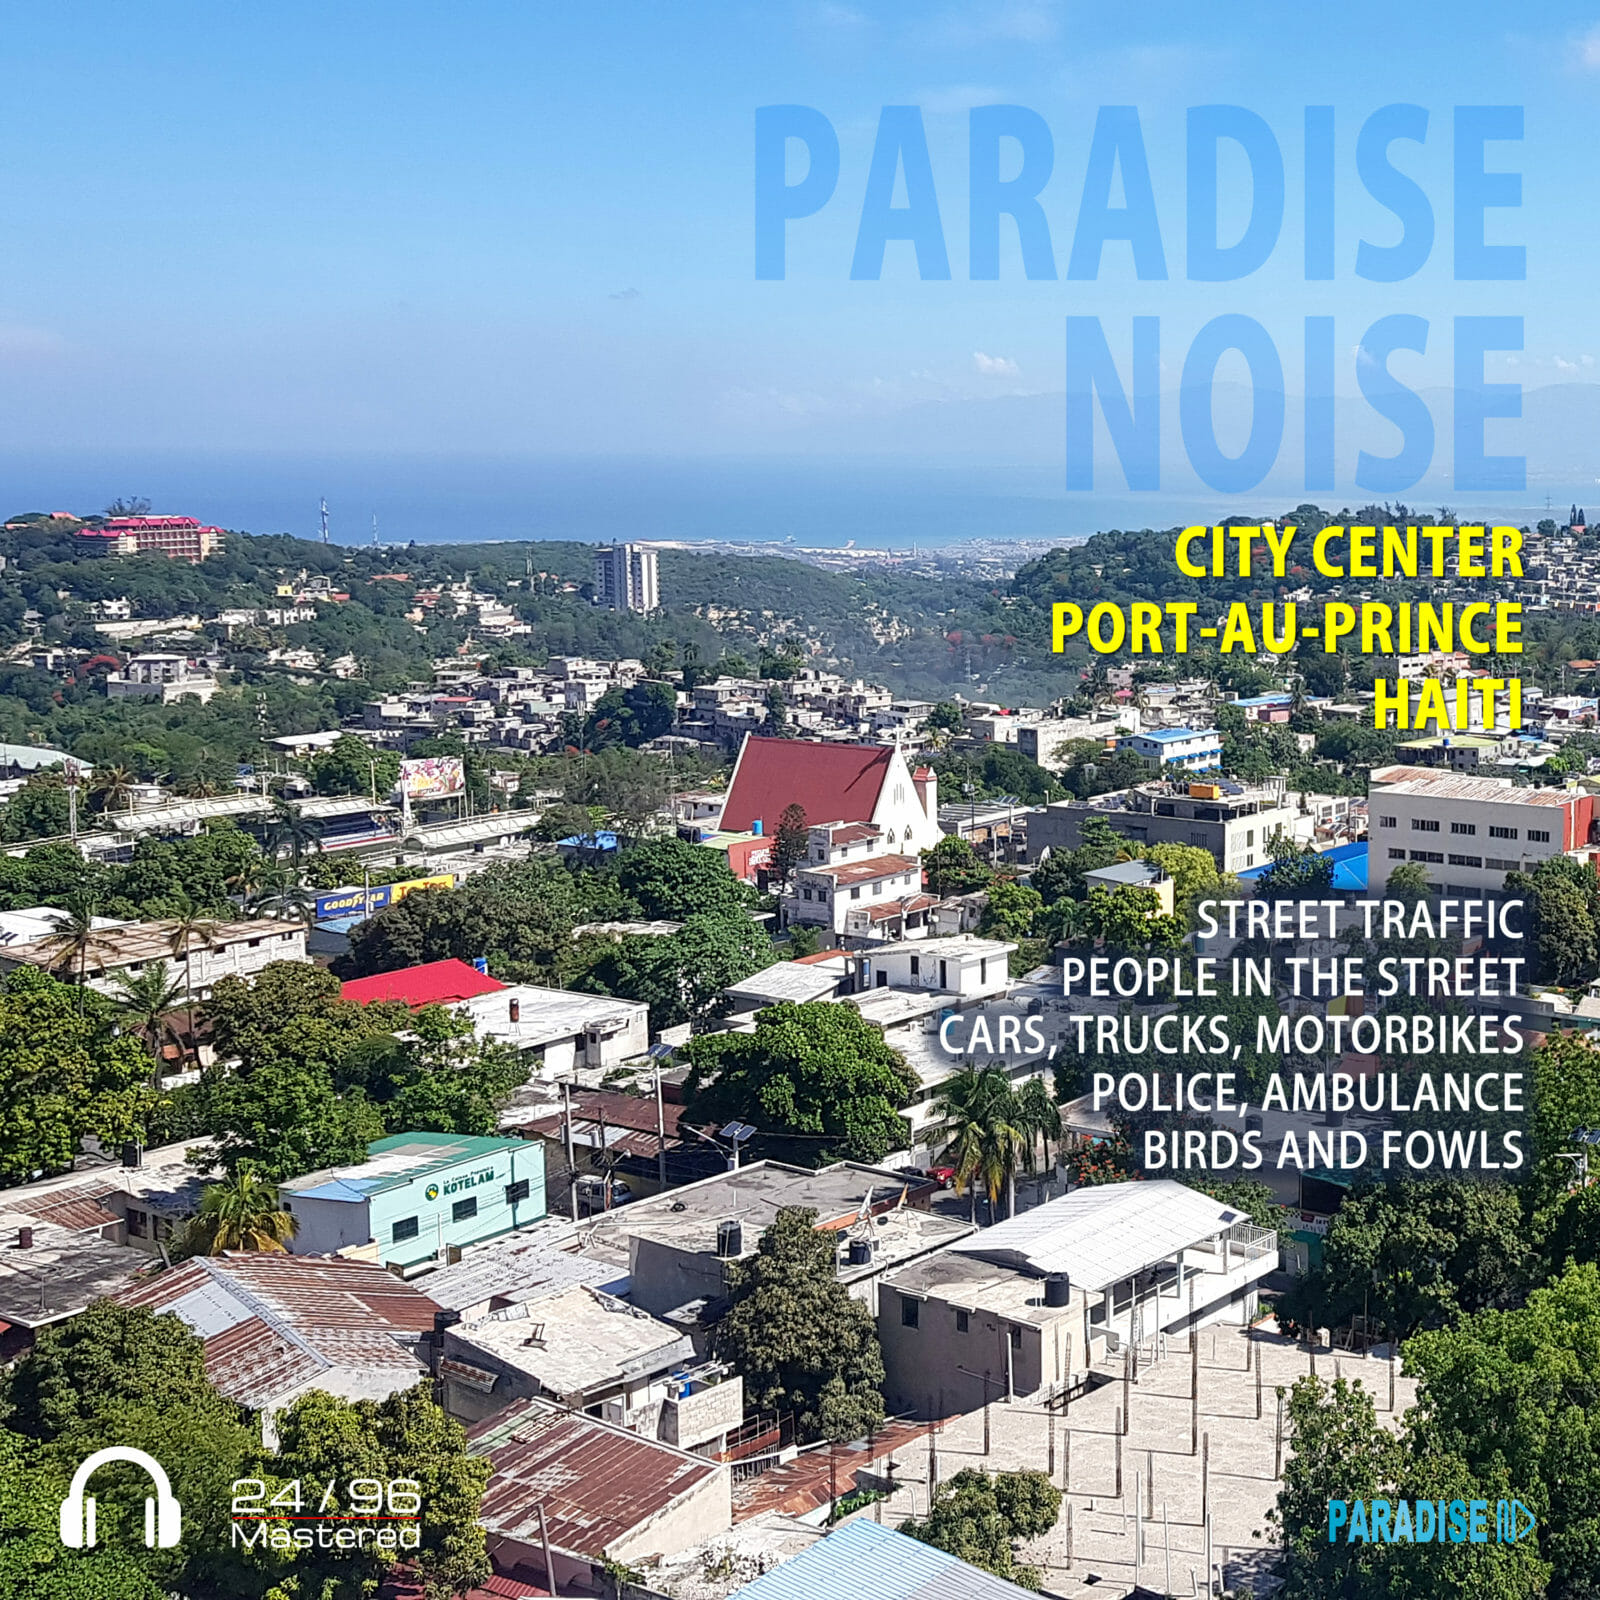 Port-au-Prince City Center - Paradise Noise